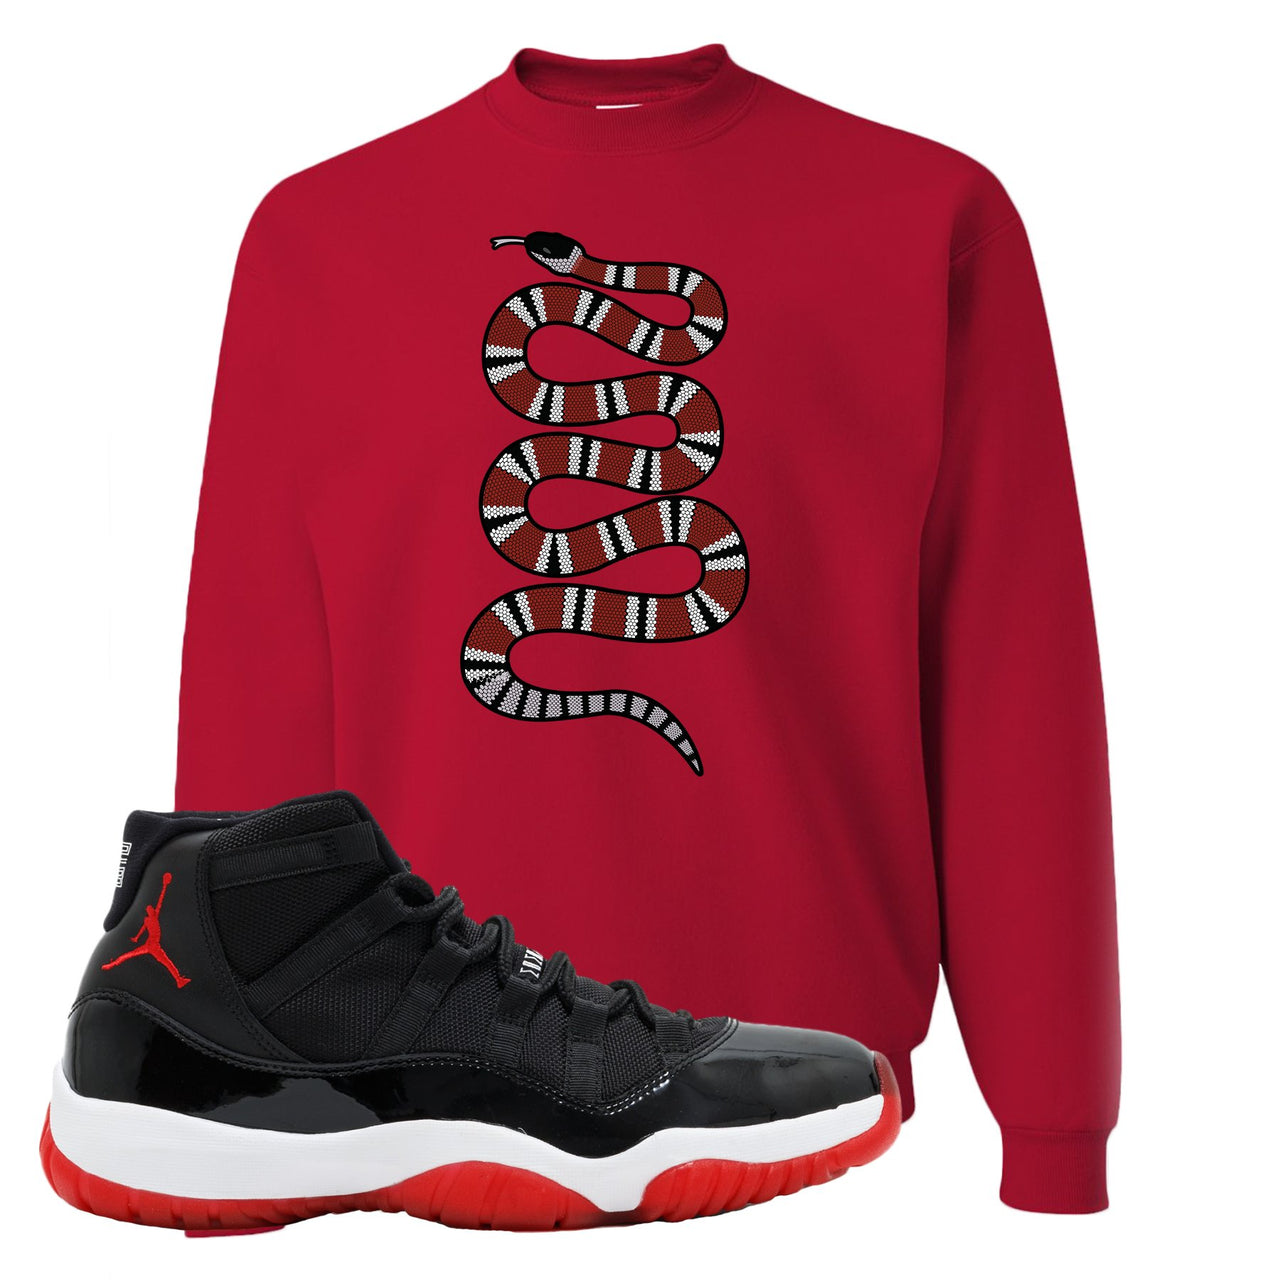 Jordan 11 Bred Coiled Snake Red Sneaker Hook Up Crewneck Sweatshirt